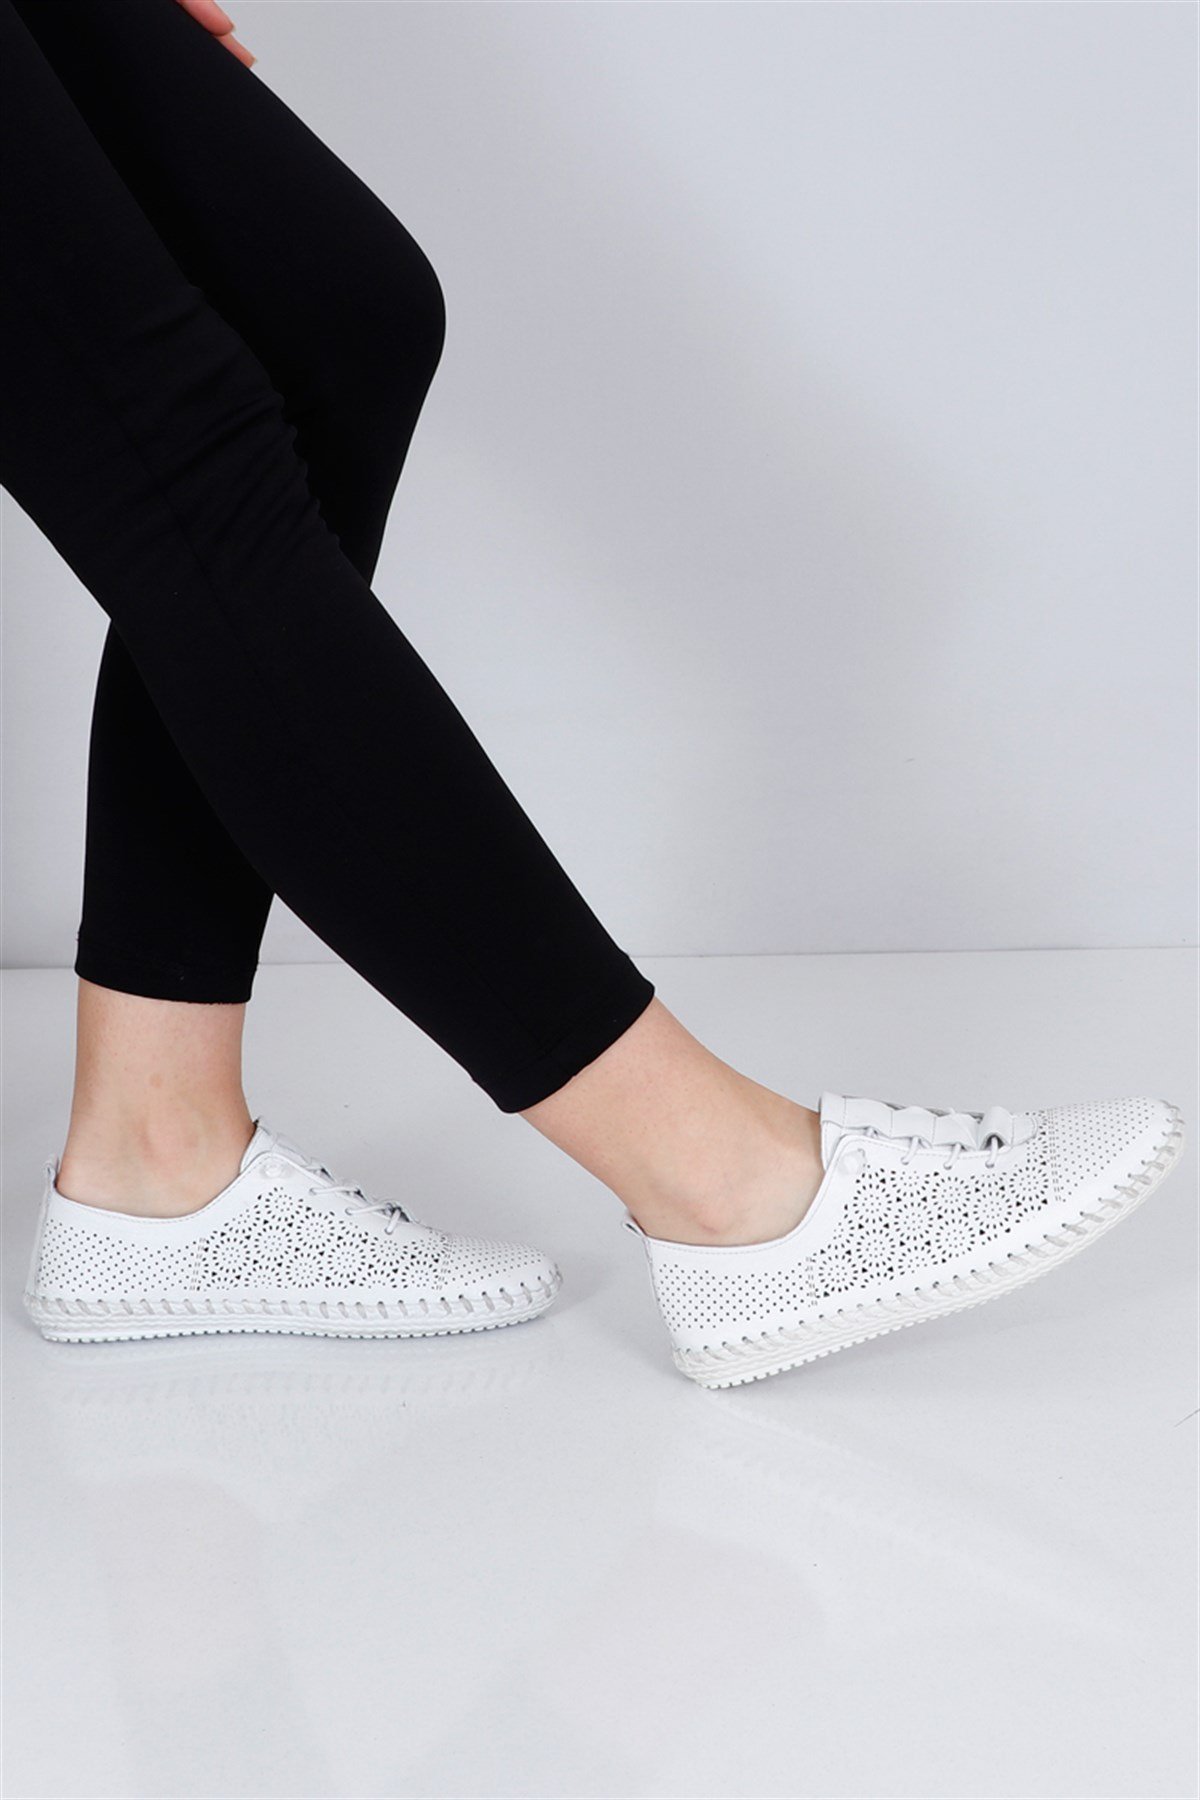 Beyaz Deri Düz Taban Bağlı Kadın Babet Ayakkabı 102 Fiyatı ve Modelleri